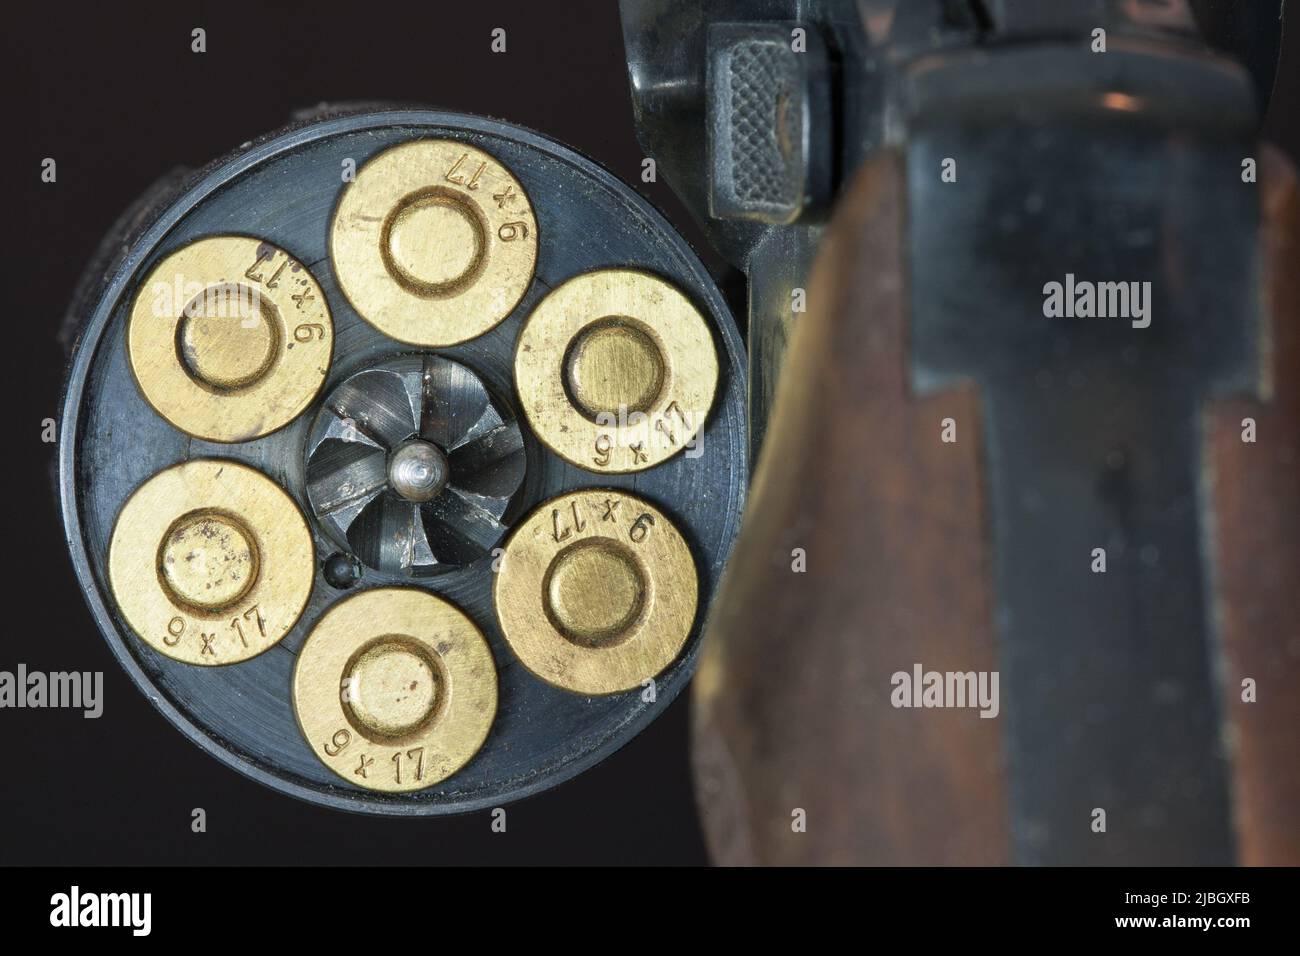 Tambour chargé d'un revolver. Le revolver appartient à la catégorie des pistolets multi-shot et les cartouches sont chargées dans le tambour rotatif. Banque D'Images